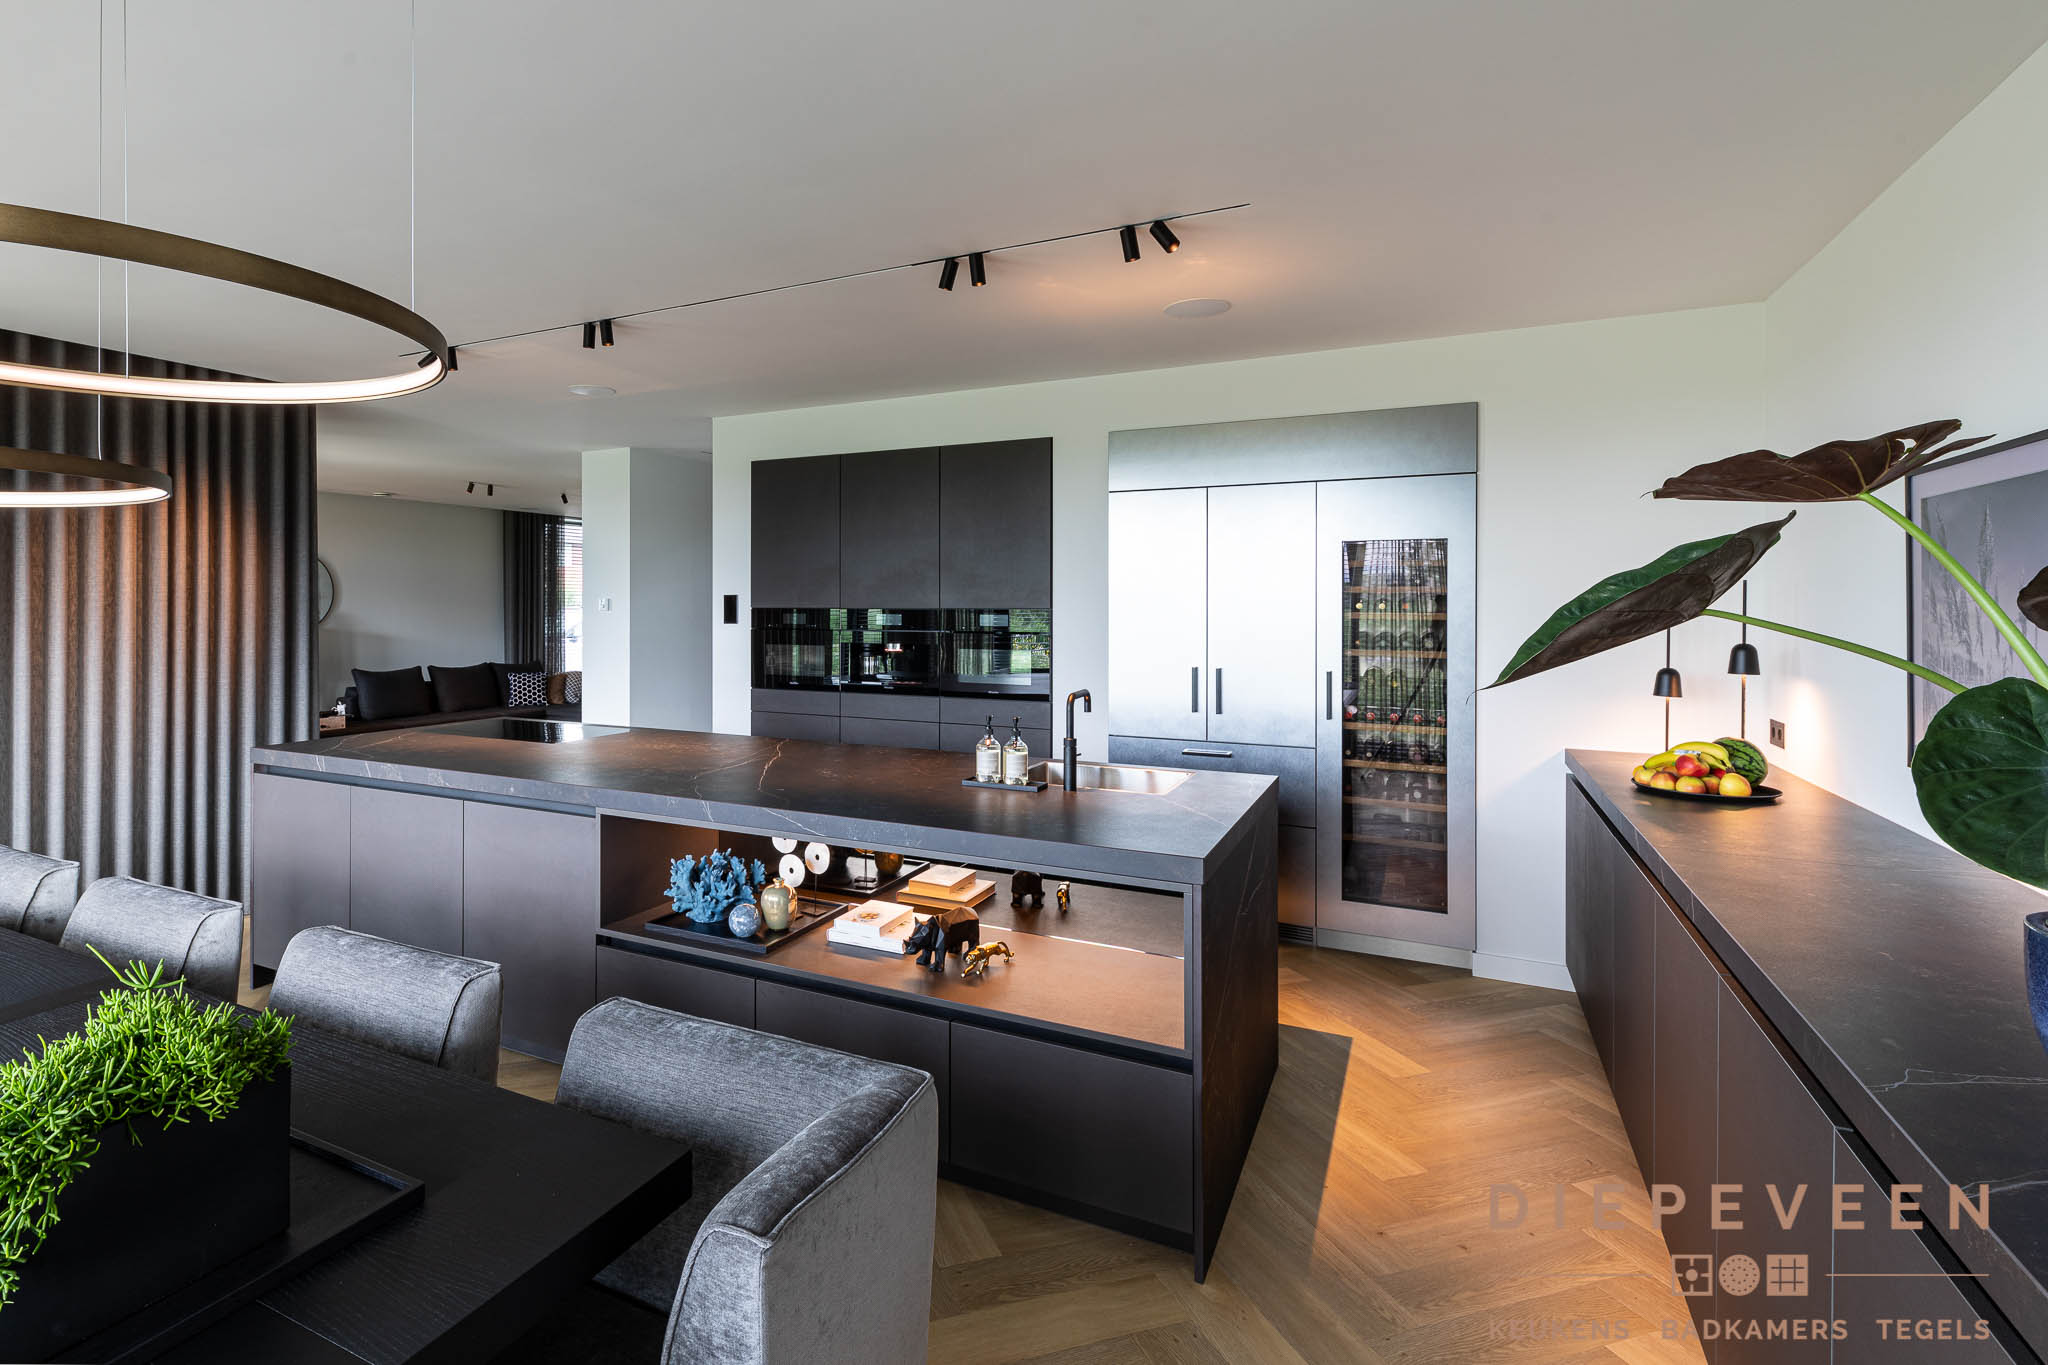 Foto : Moderne sfeervolle keuken